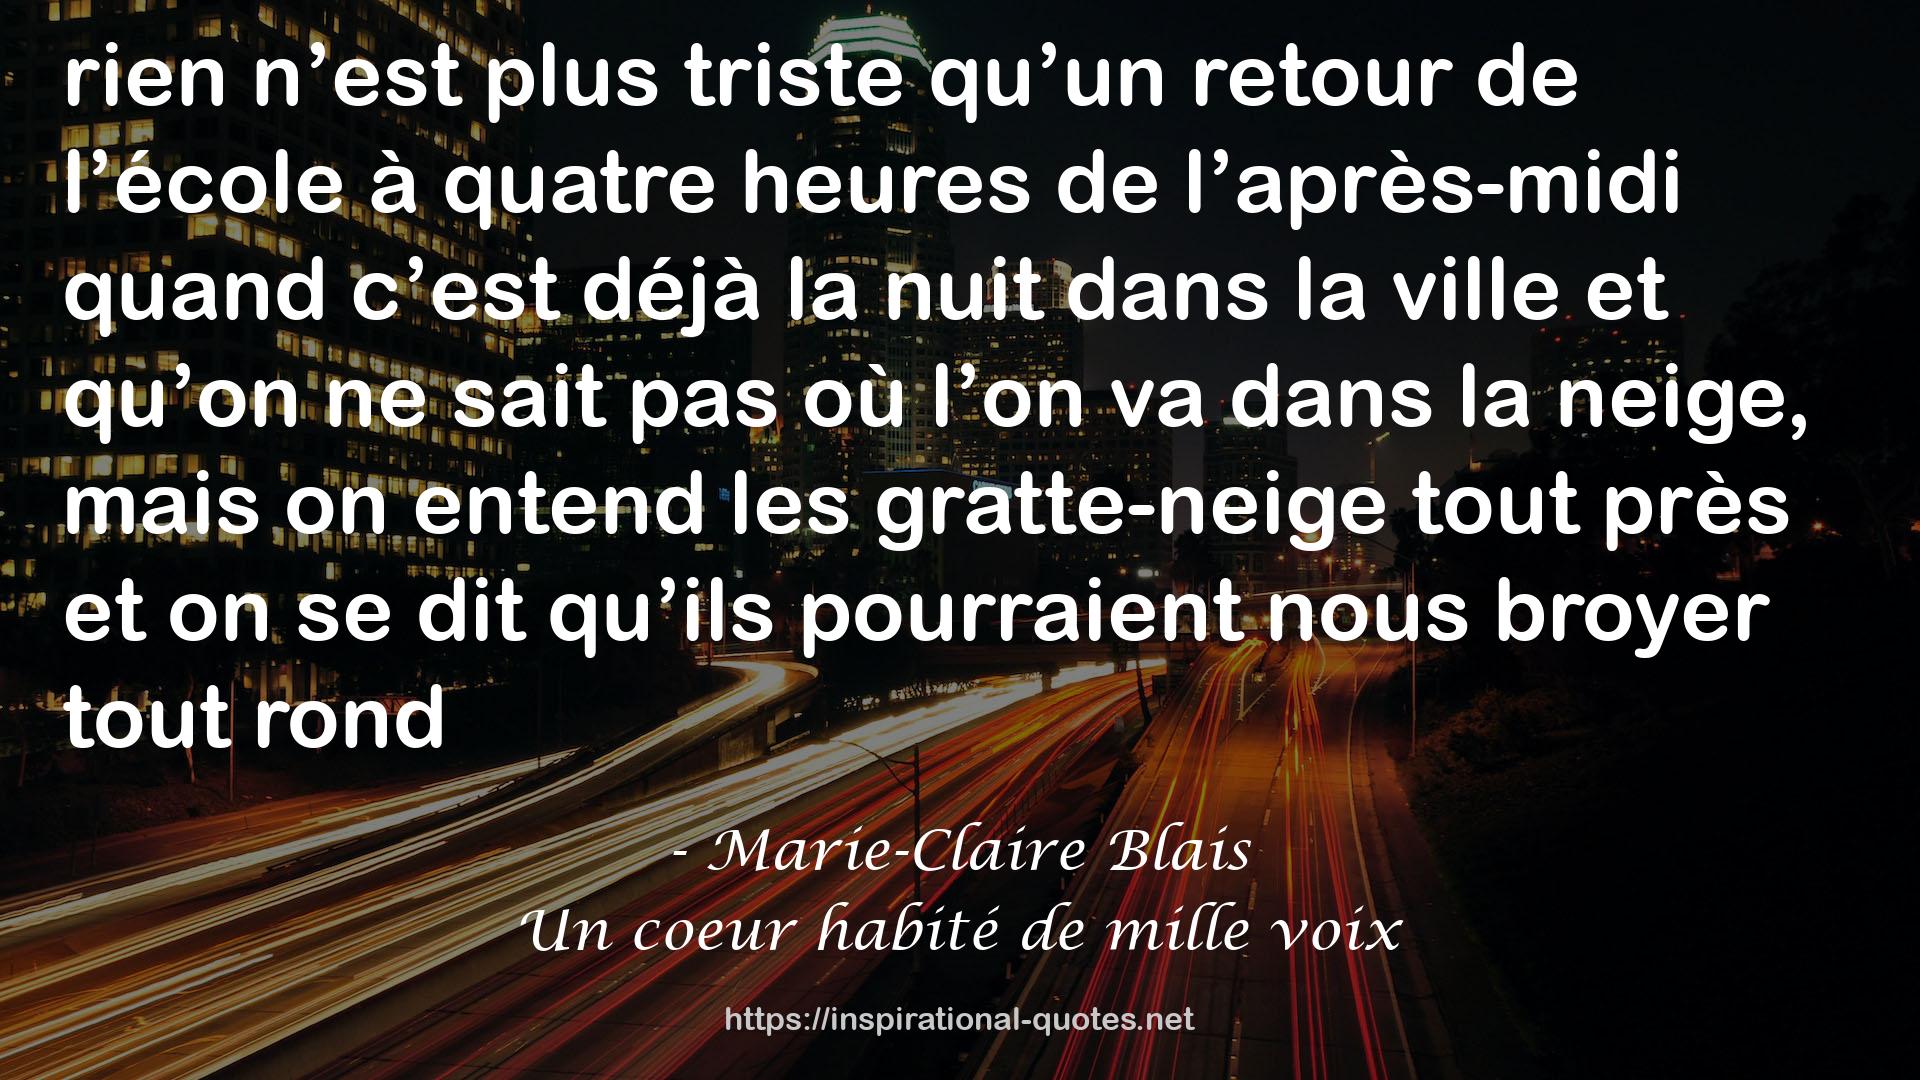 Marie-Claire Blais QUOTES